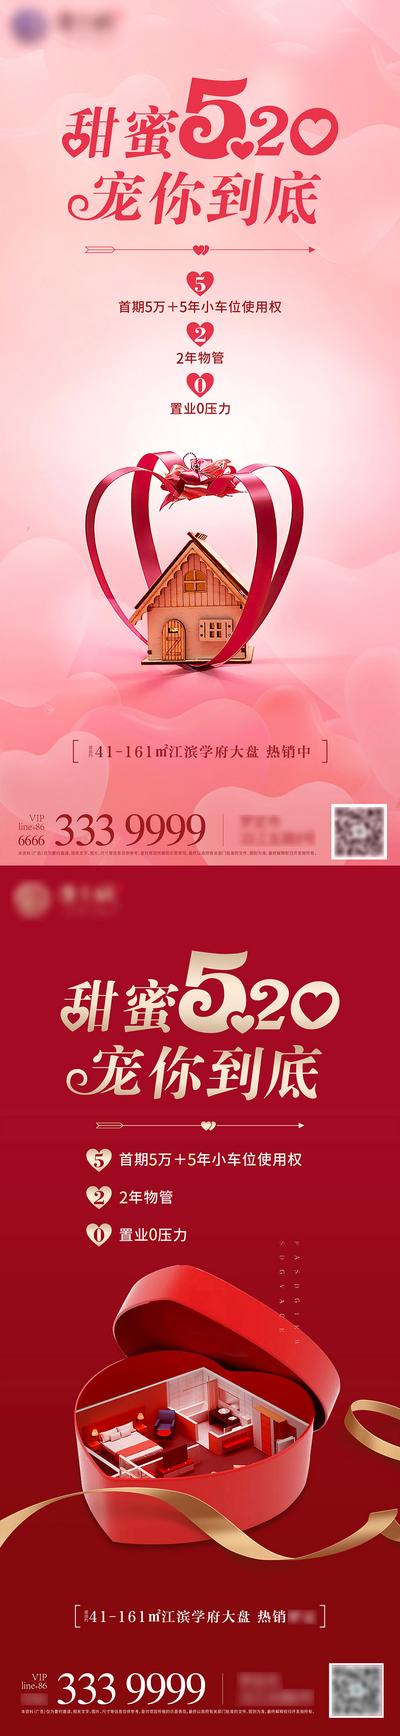 南门网 海报 房地产 公历节日 520 情人节 热销 甜蜜 礼品 系列